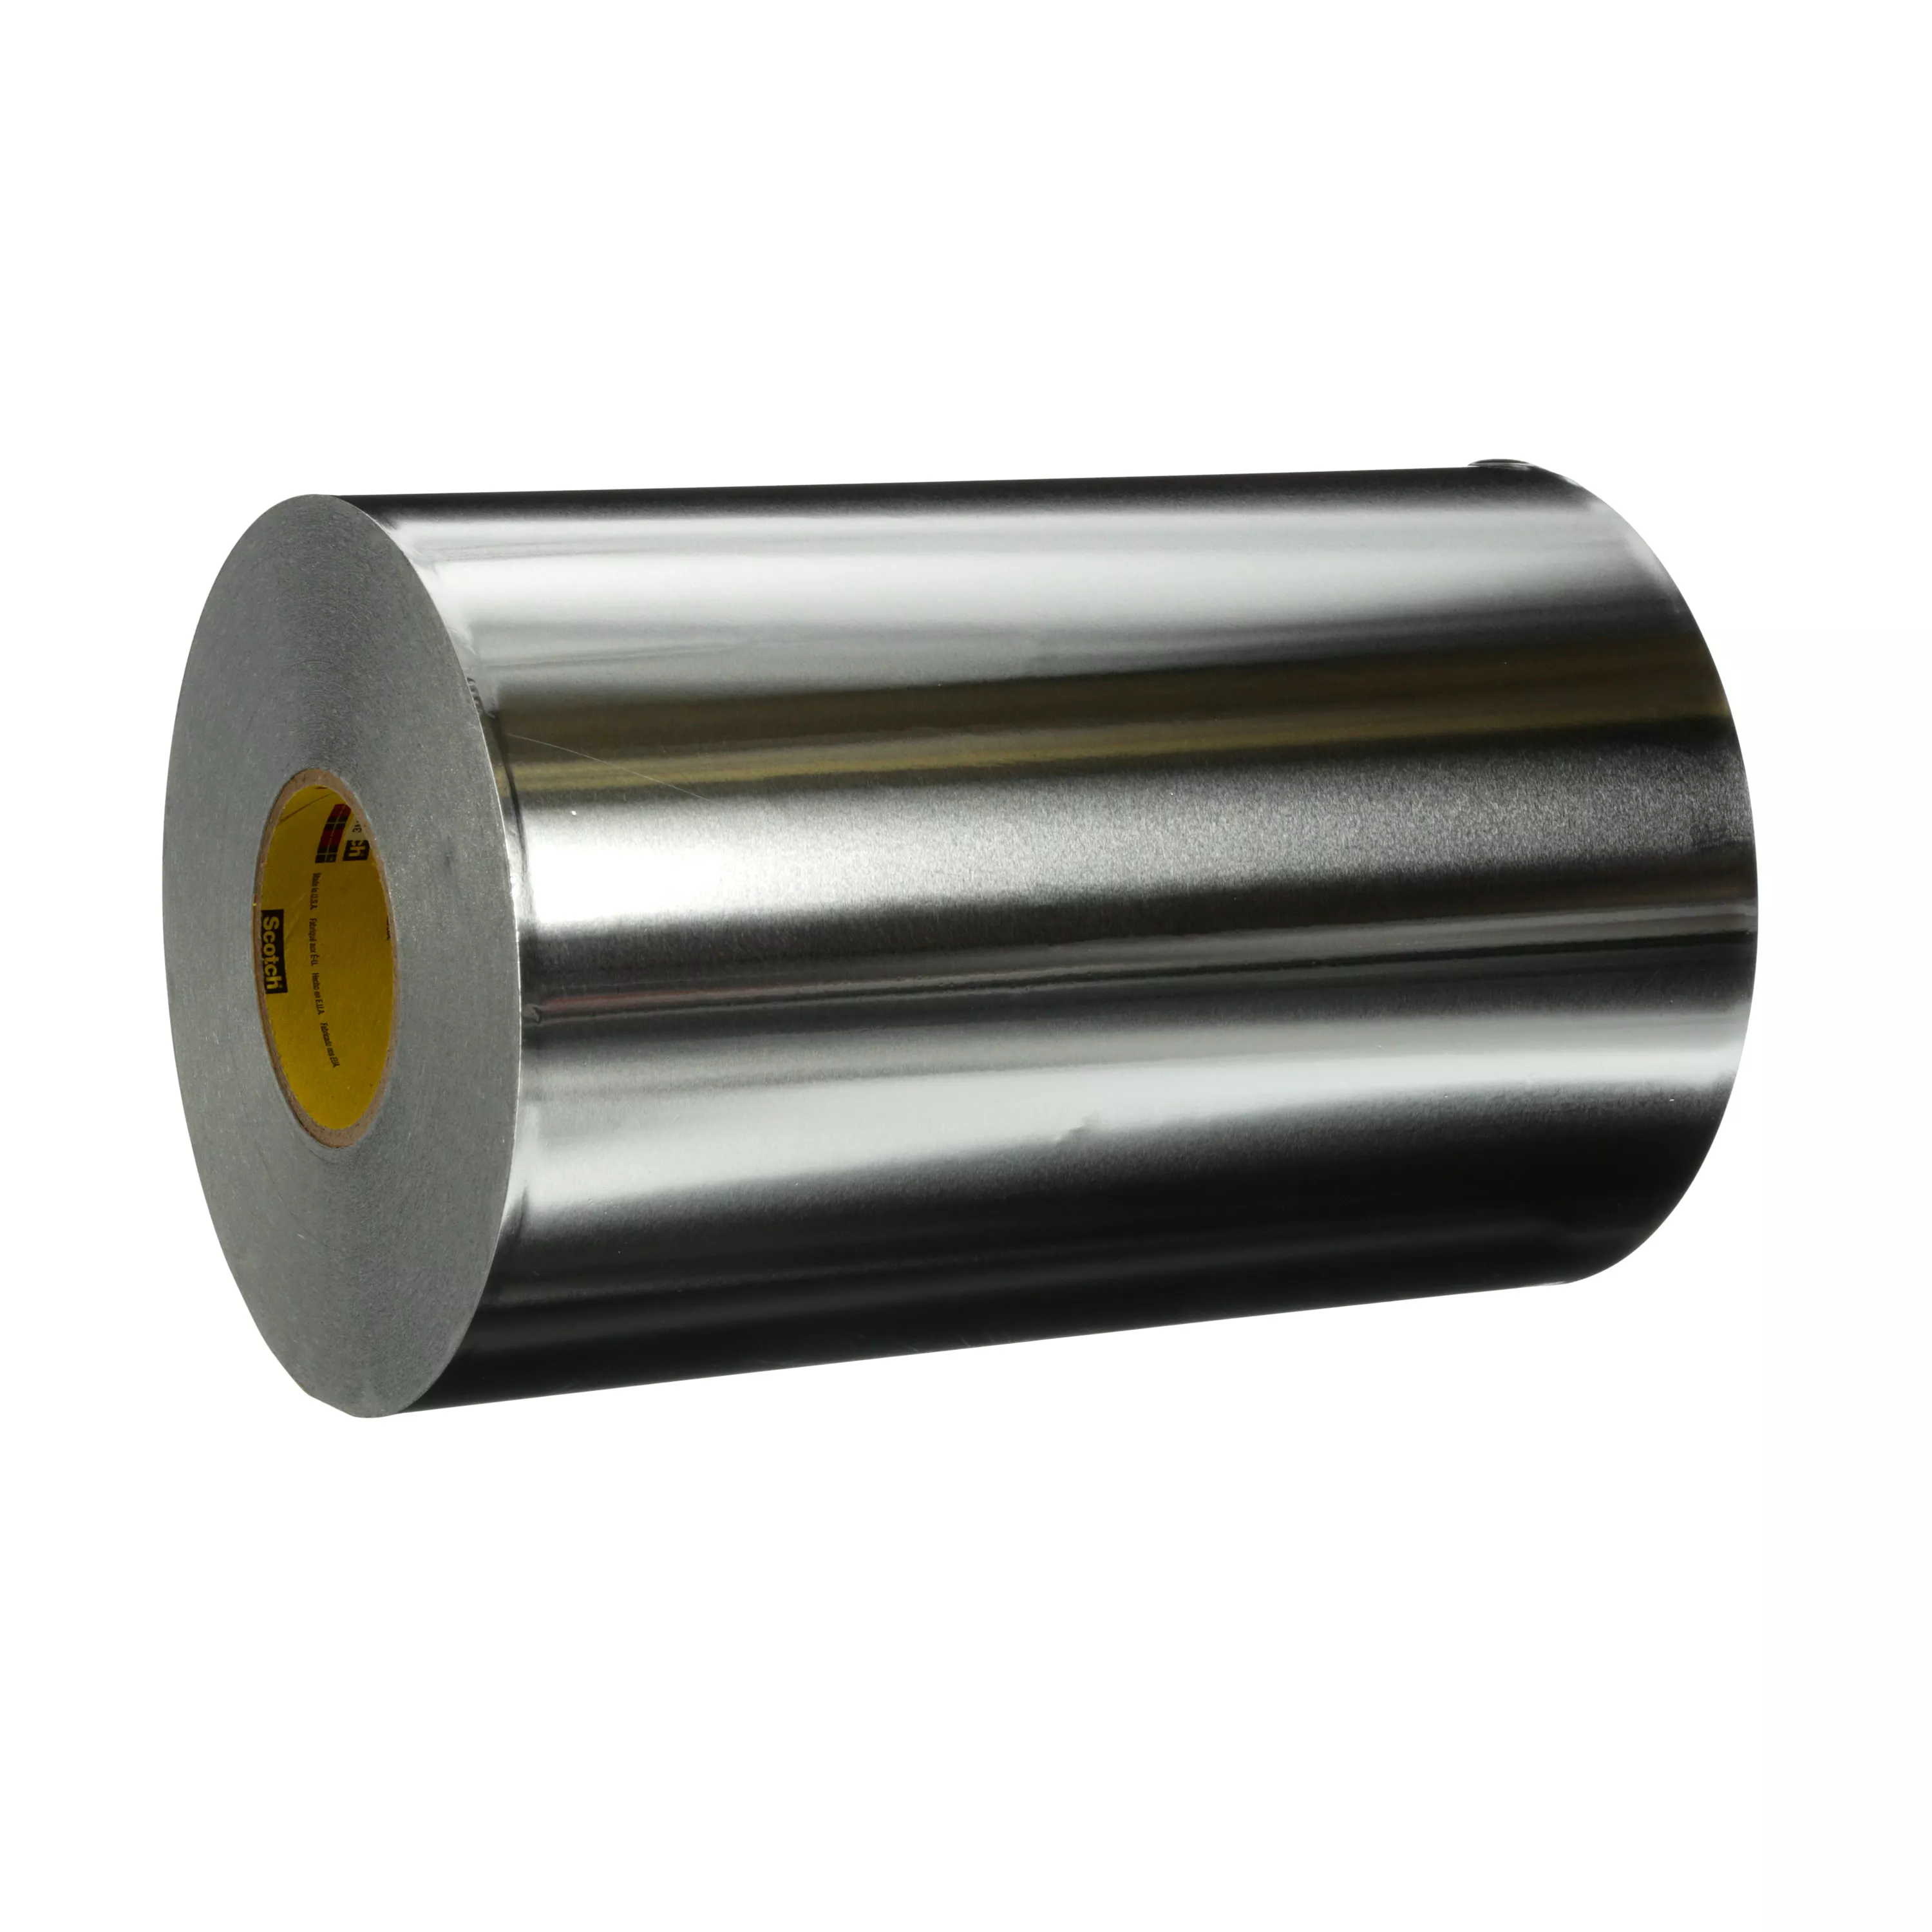 3M™ High Temperature Aluminum Foil Tape 433L, Silver, 12 1/2 in x 180
yd, 3.5 mil, 1 roll per case